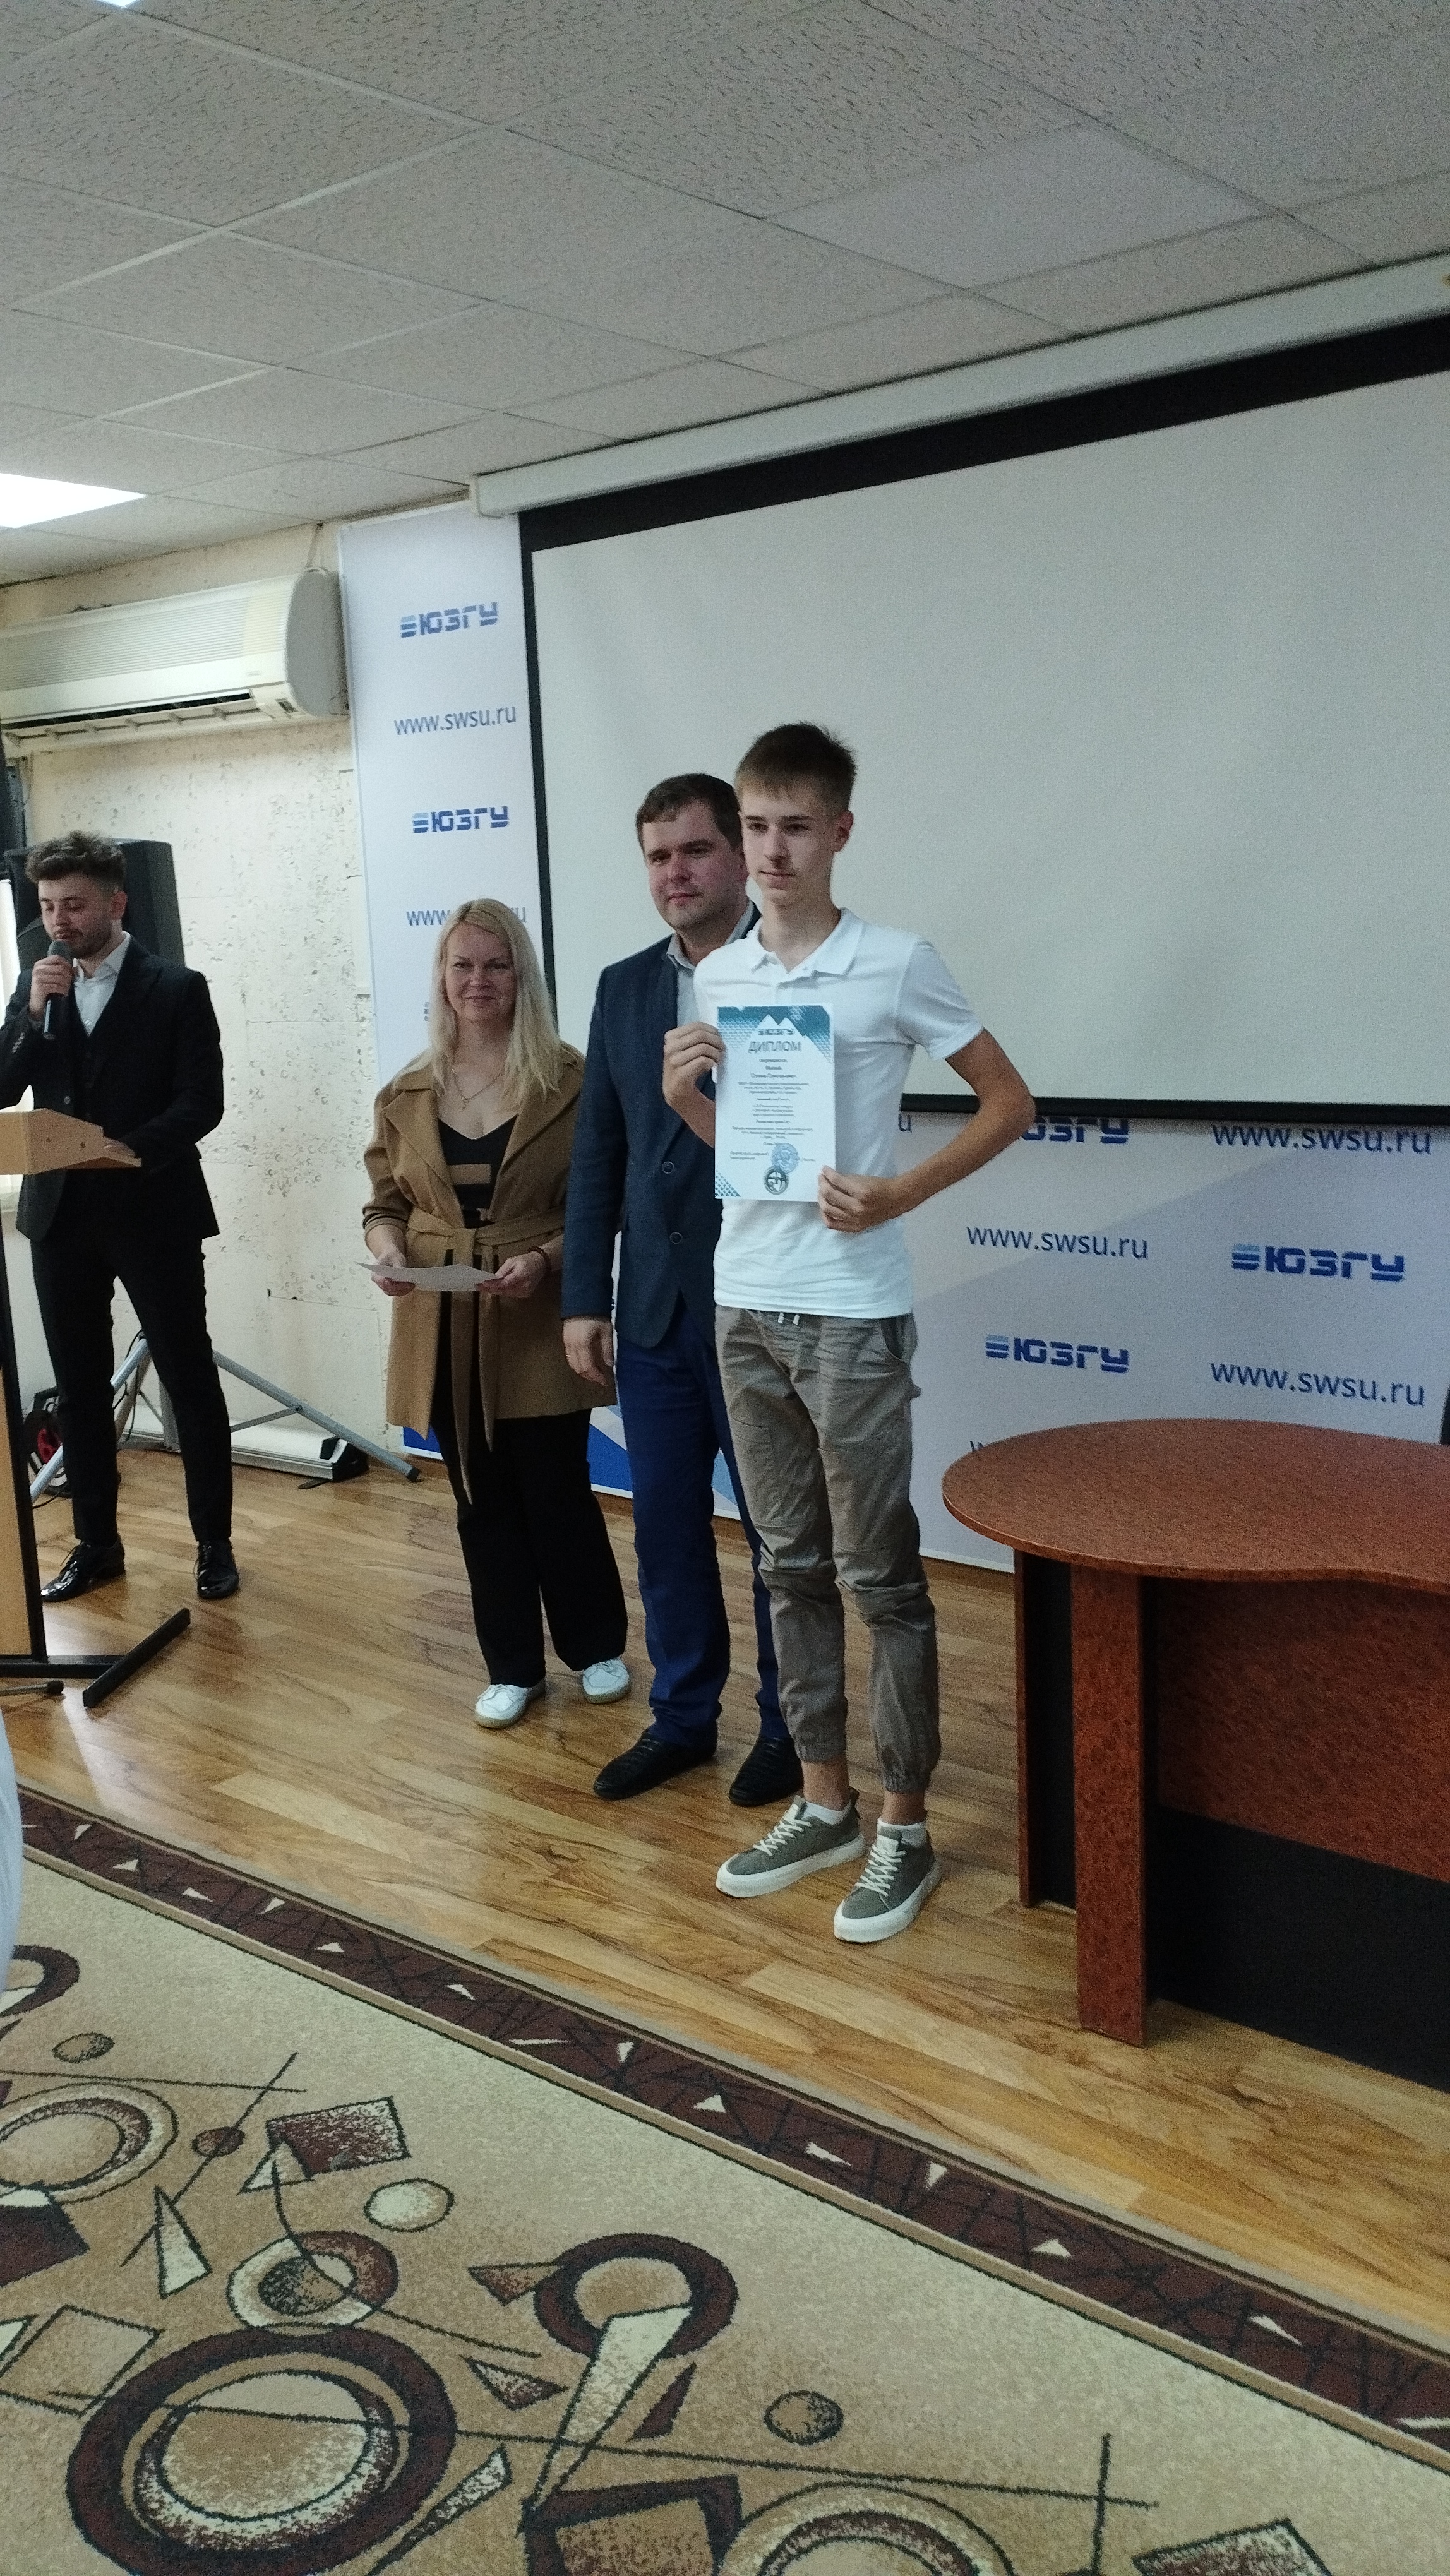 Поздравляем Волкова Степана с результативным участие в региональном конкурсе по трёхмерному моделированию!!!!.